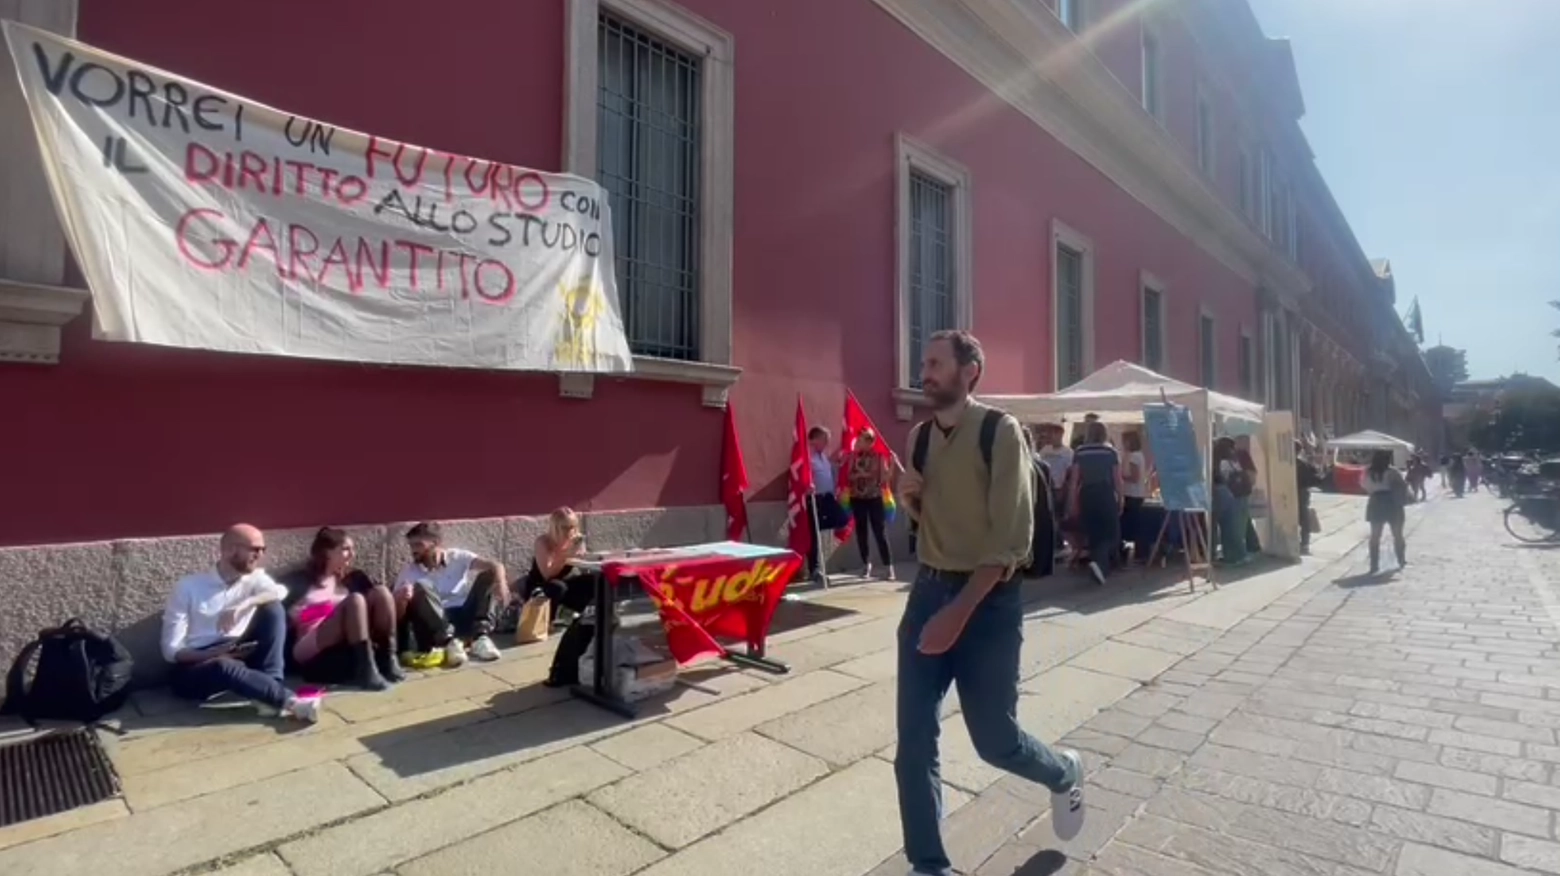 La protesta dei giovani milanesi davanti all’ateneo è solo l’ultima di una serie di contestazioni rivolte alla carenza di alloggi in città e al caro-vita: il video